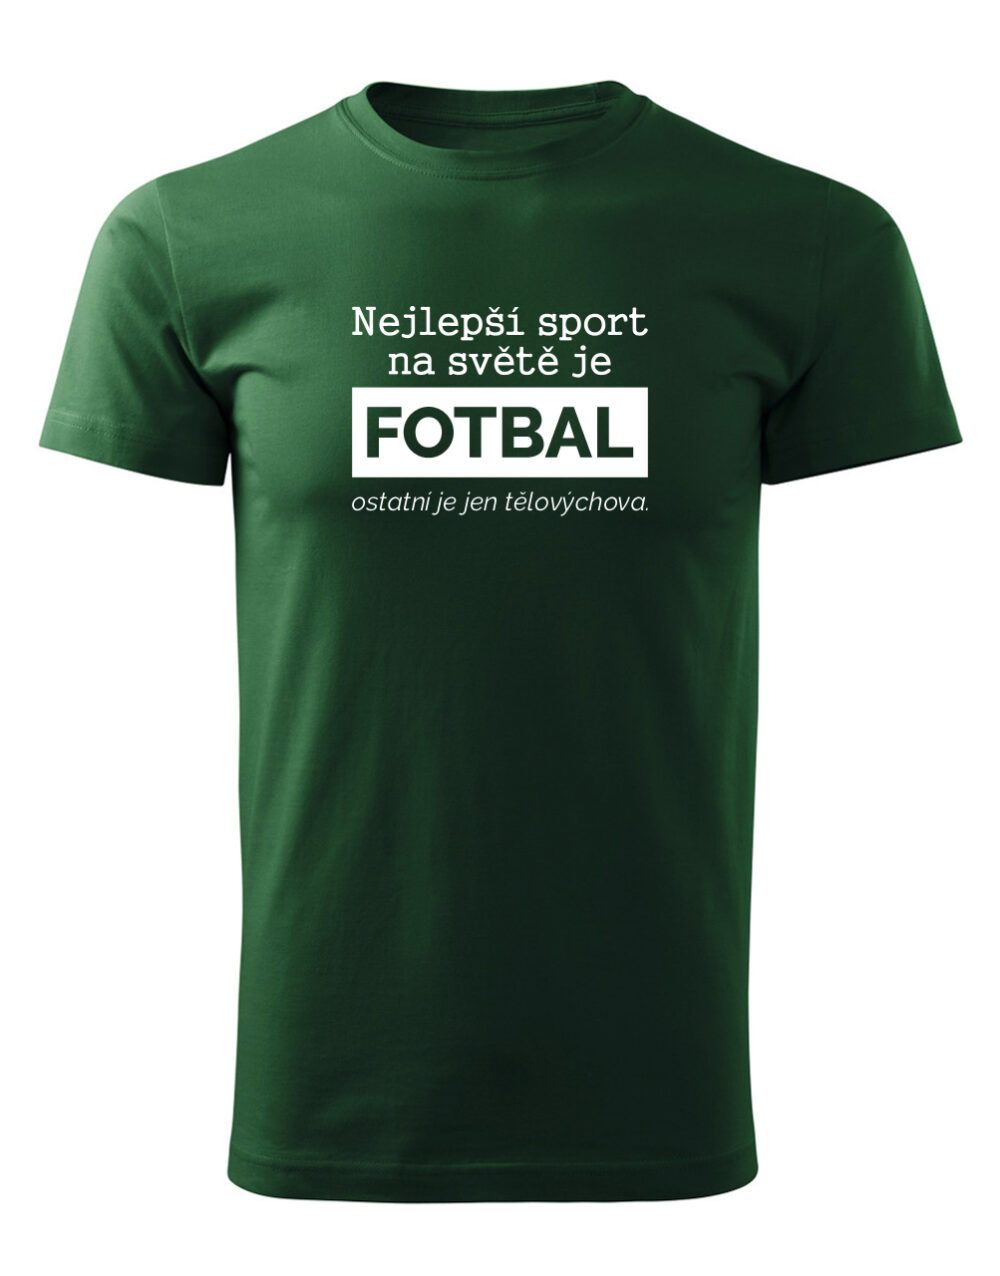 Pánské tričko s potiskem Nejlepší sport je fotbal lahvově zelená